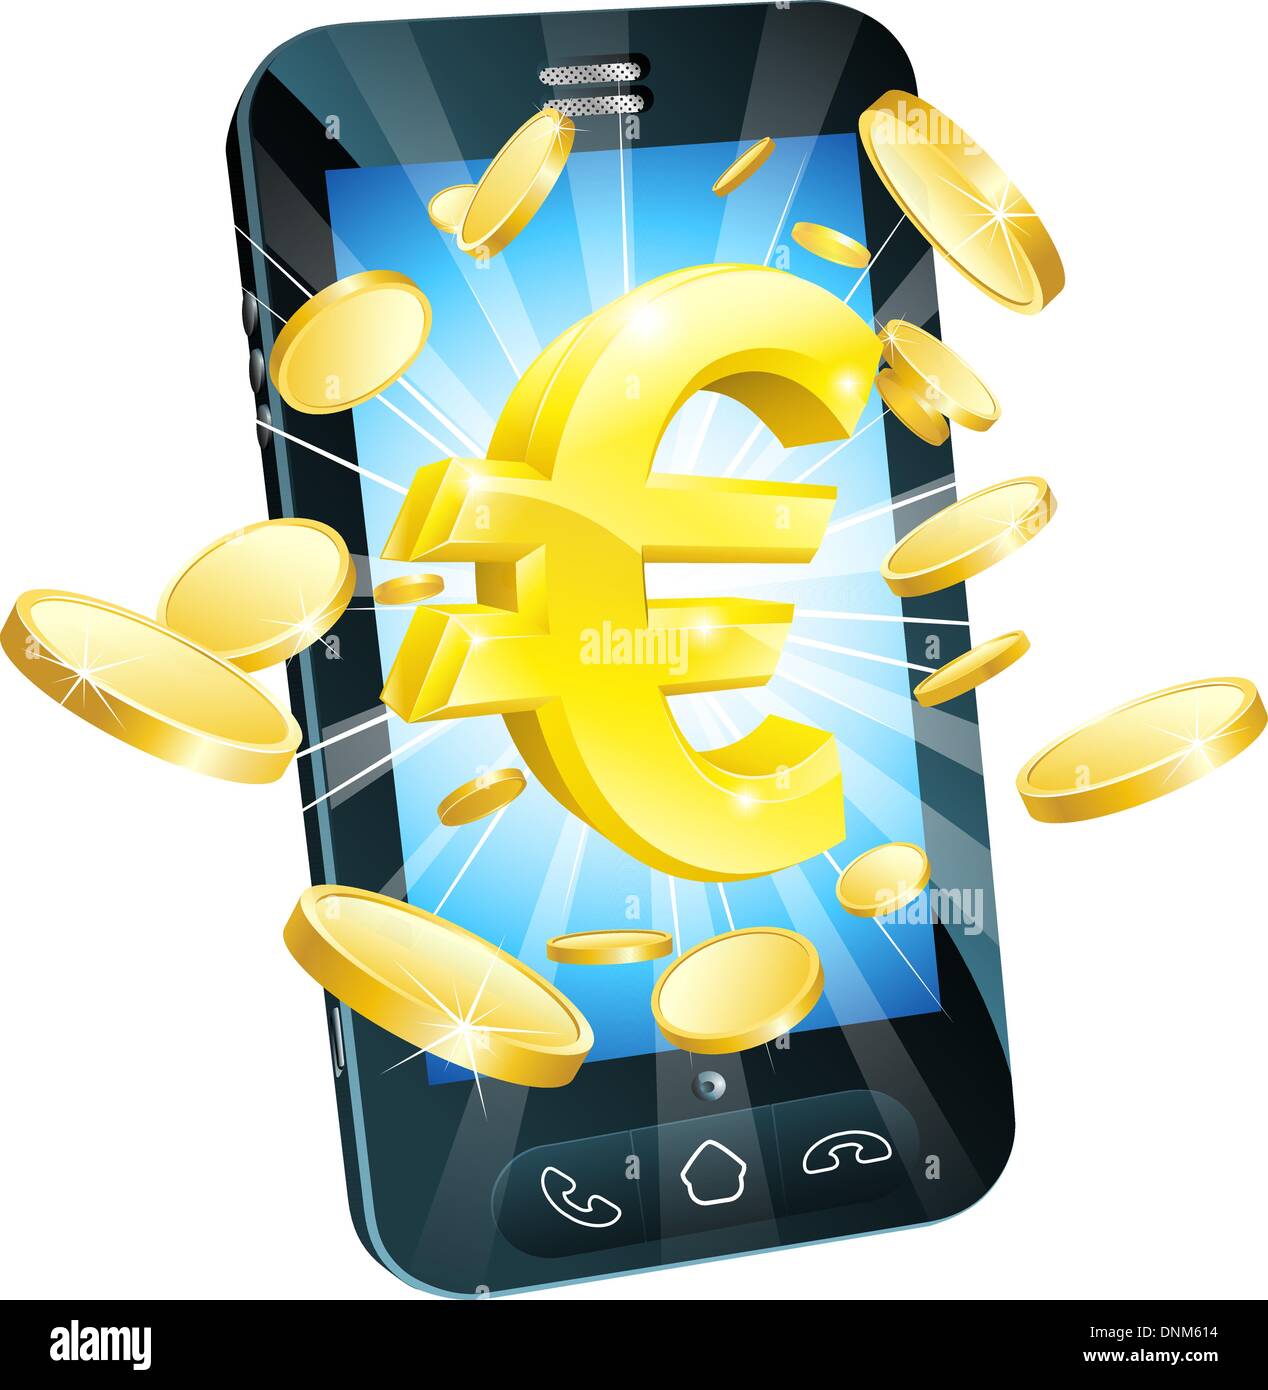 Euro Geld Telefon Concept Illustration des Handy mit Münzen und gold Euro-Zeichen Stock Vektor